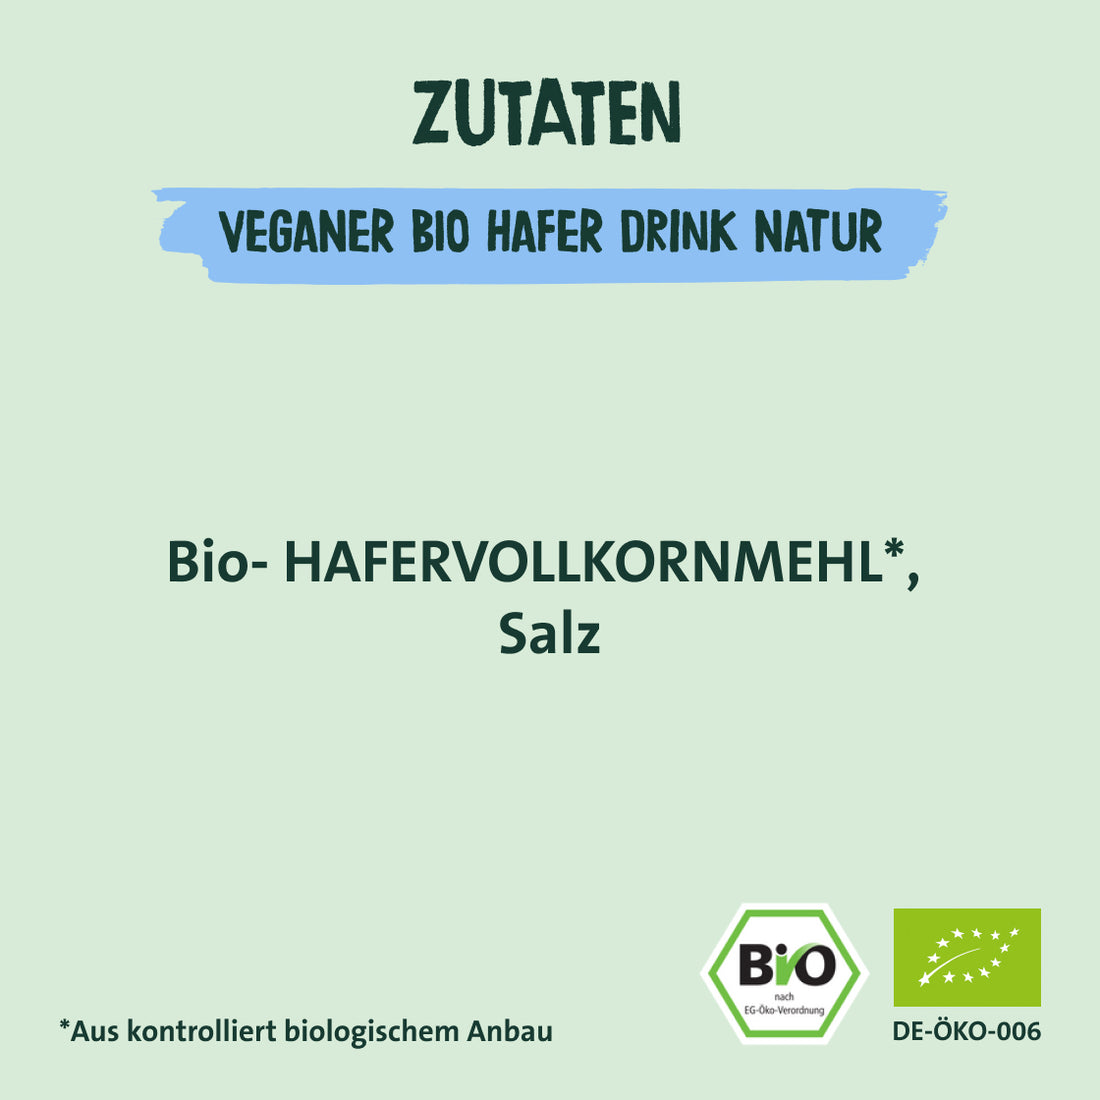 Zutaten veganer Bio Hafer Drink Natur